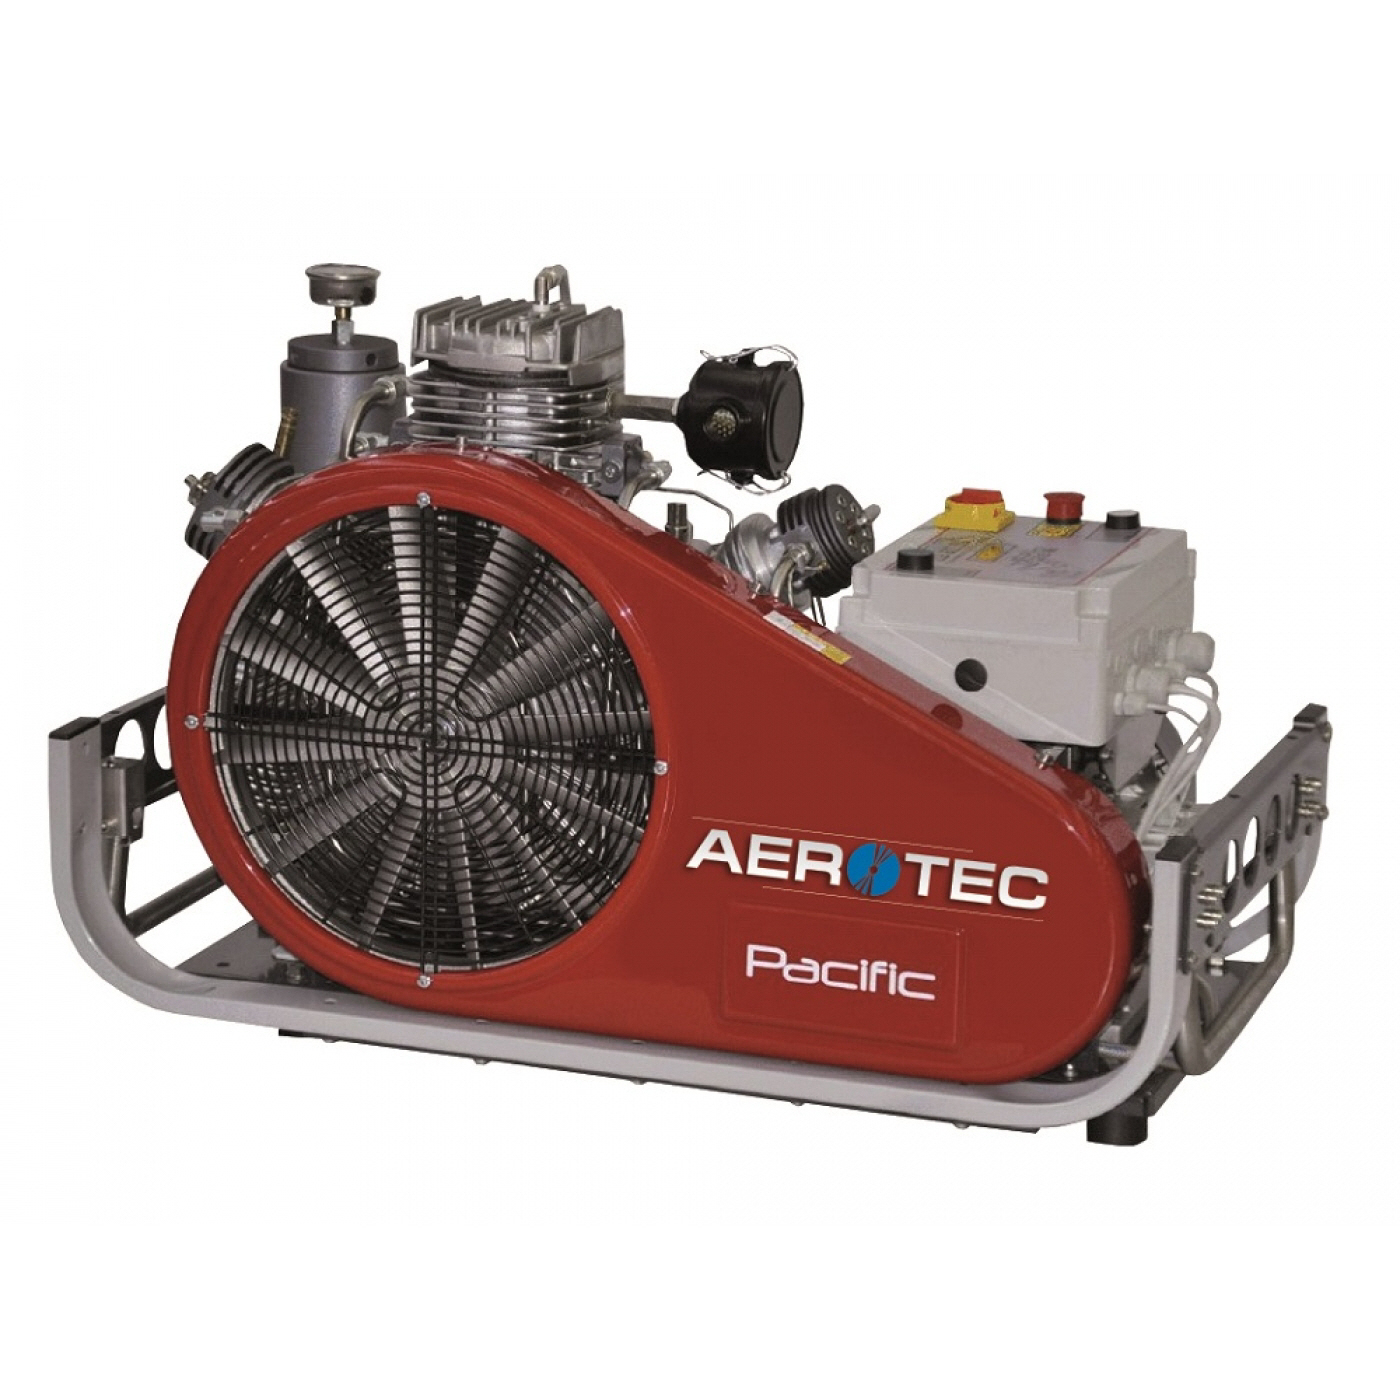 AEROTEC Kolbenkompressor PACIFIC E 30 - 225 bar Tauchkompressor Tauchkompressoren